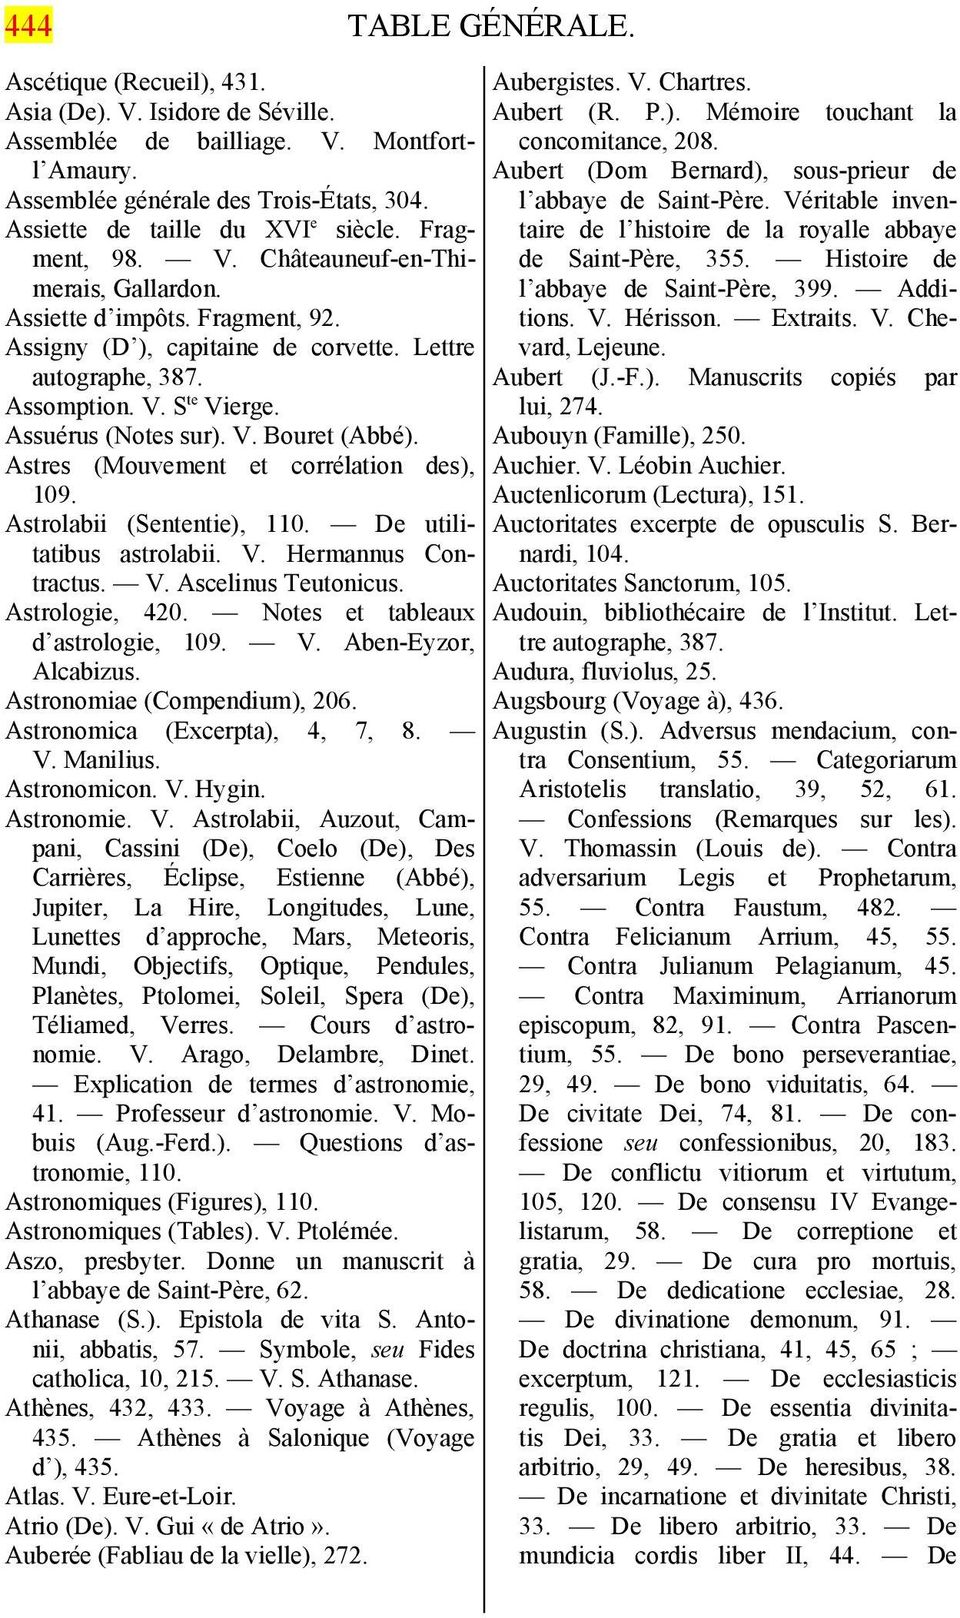 Assuérus (Notes sur). V. Bouret (Abbé). Astres (Mouvement et corrélation des), 109. Astrolabii (Sententie), 110. De utilitatibus astrolabii. V. Hermannus Contractus. V. Ascelinus Teutonicus.